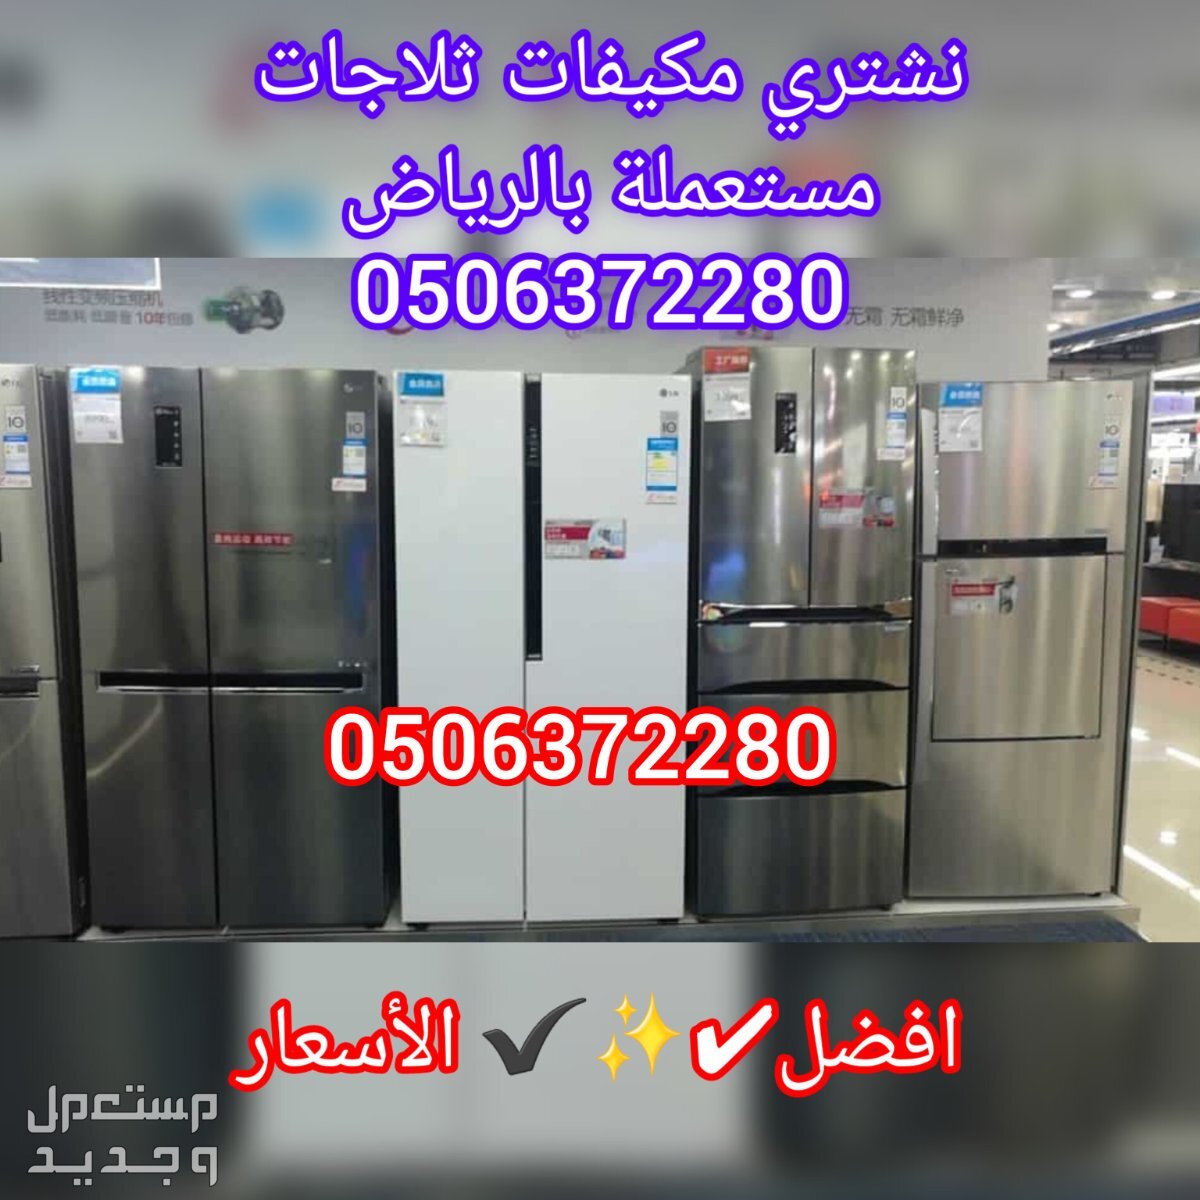 شراء مكيفات مستعملة شرق الرياض حقين شراء اجهزة كهربائية مستعملة بالرياض 0506372280